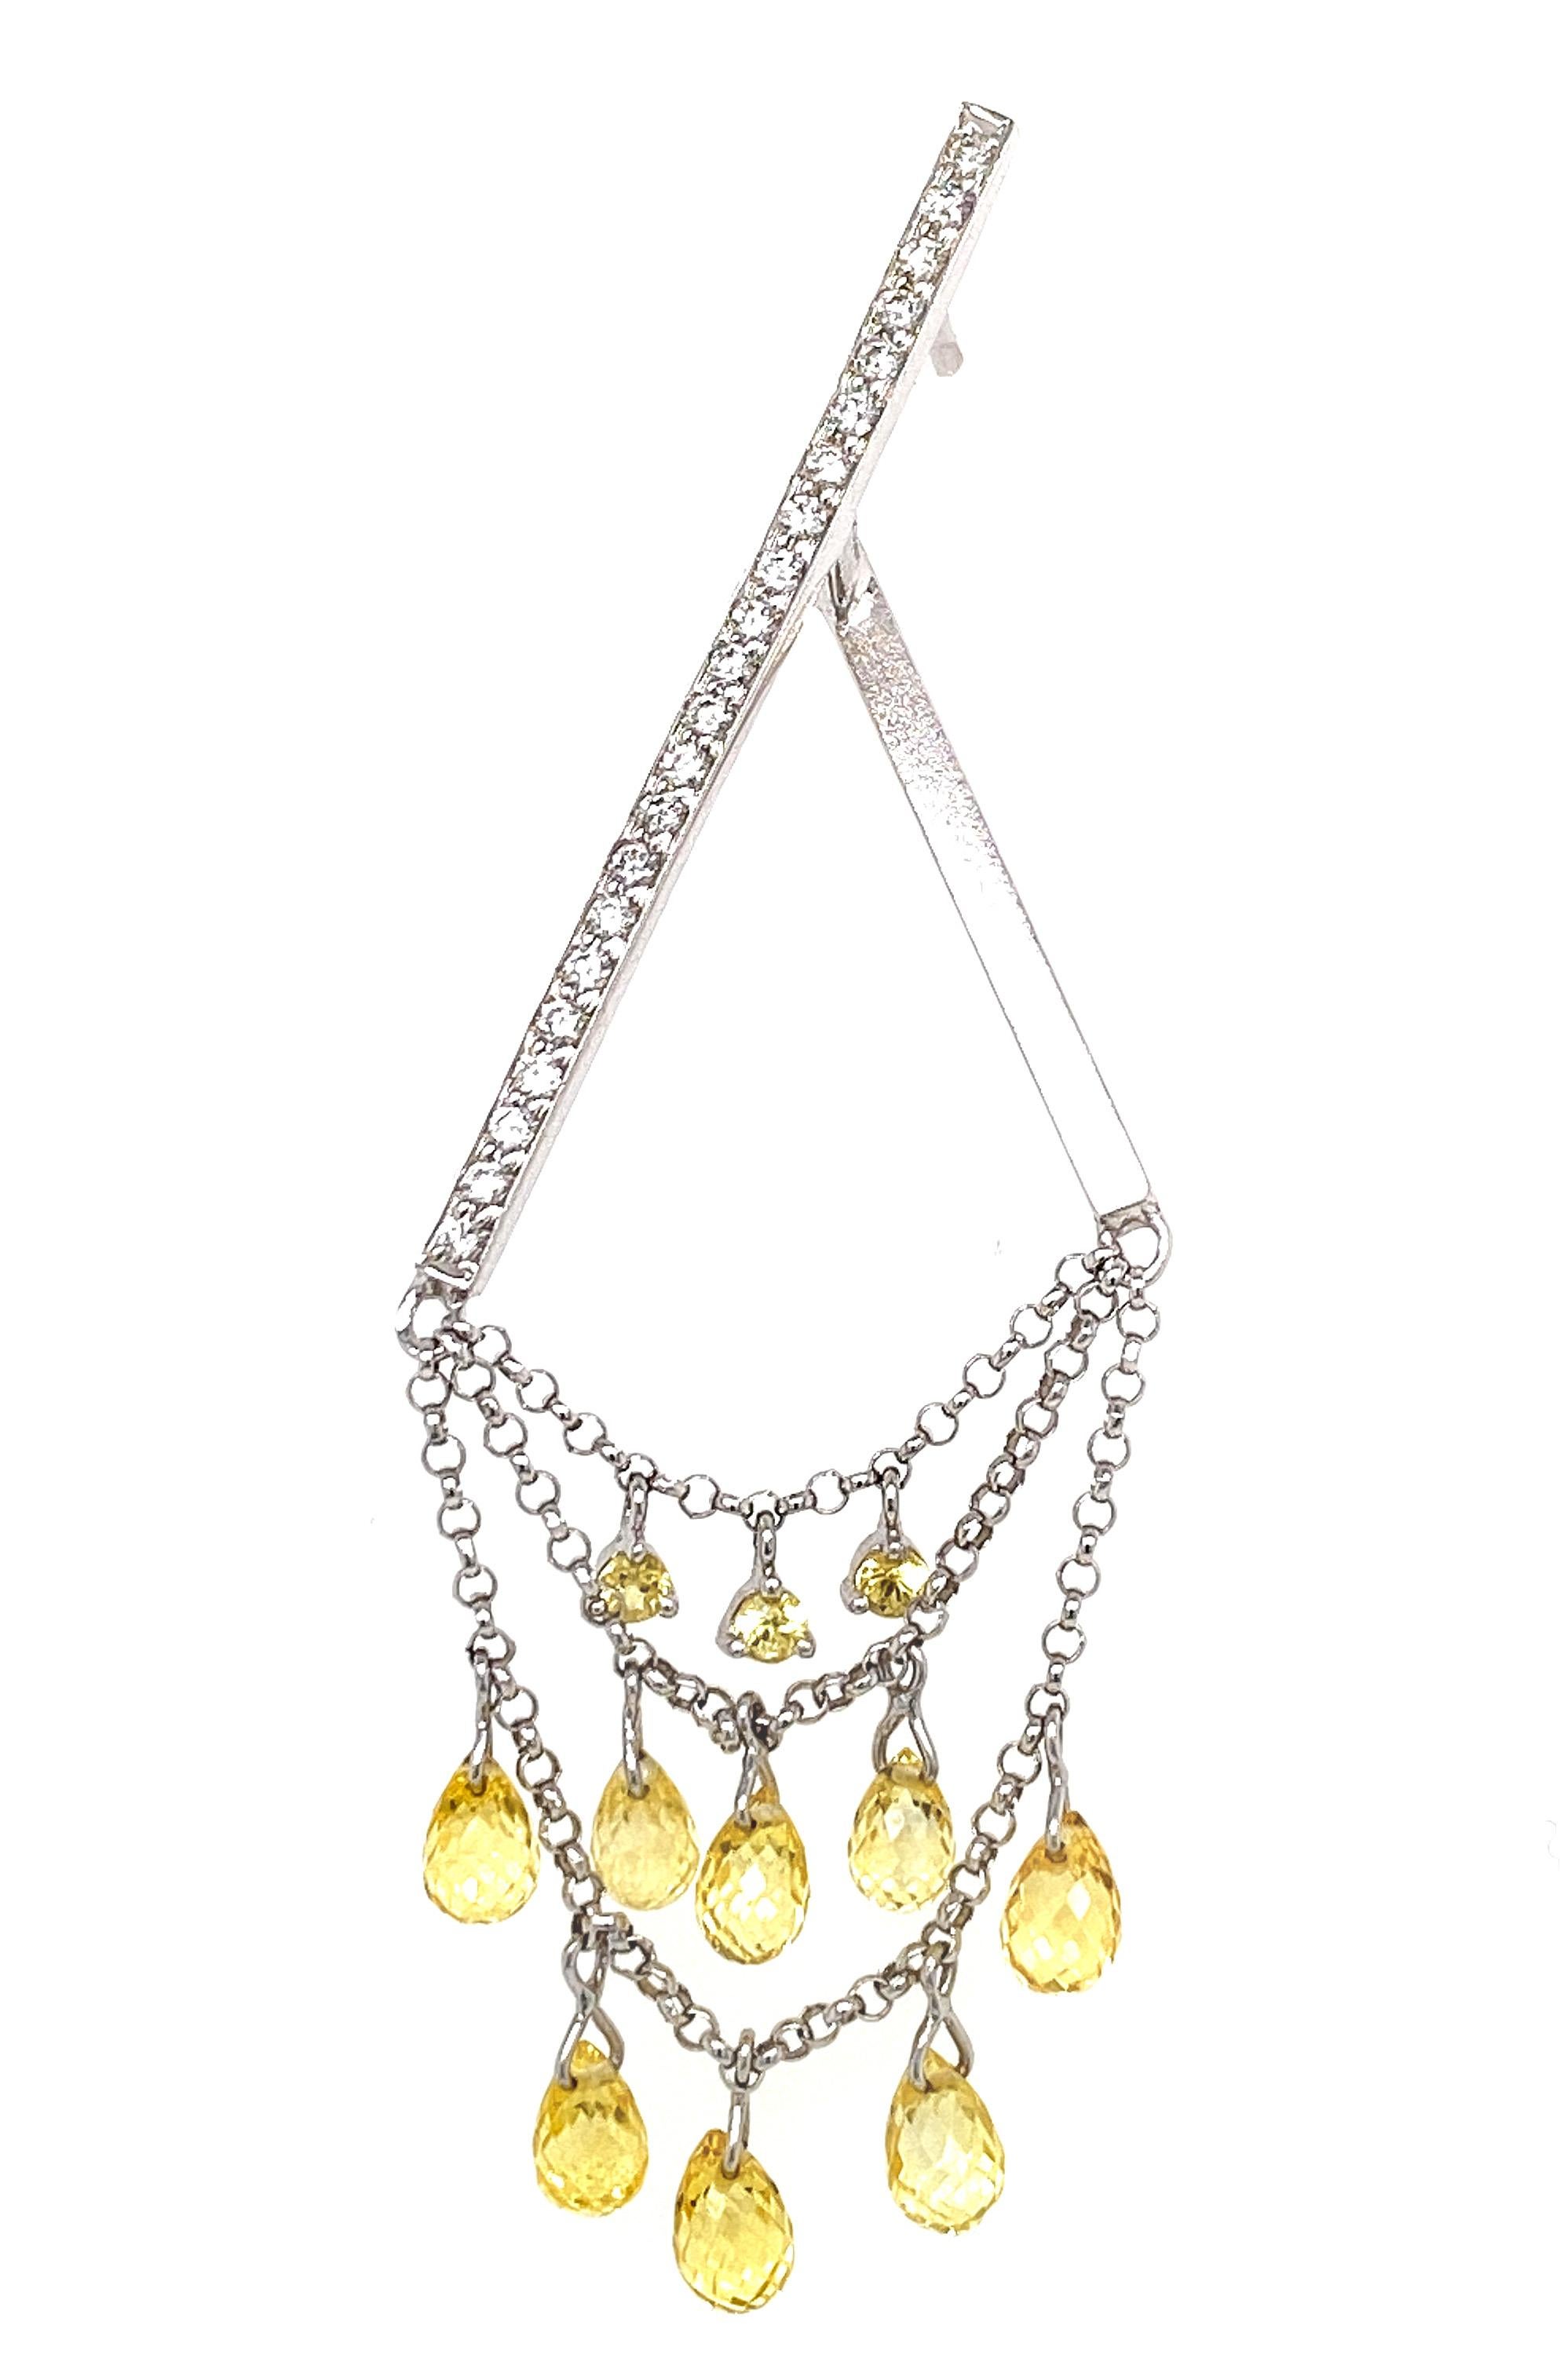 Briolette Cut Dilys' Briolette Fancy Sapphire & Diamond Chandelier Earrings